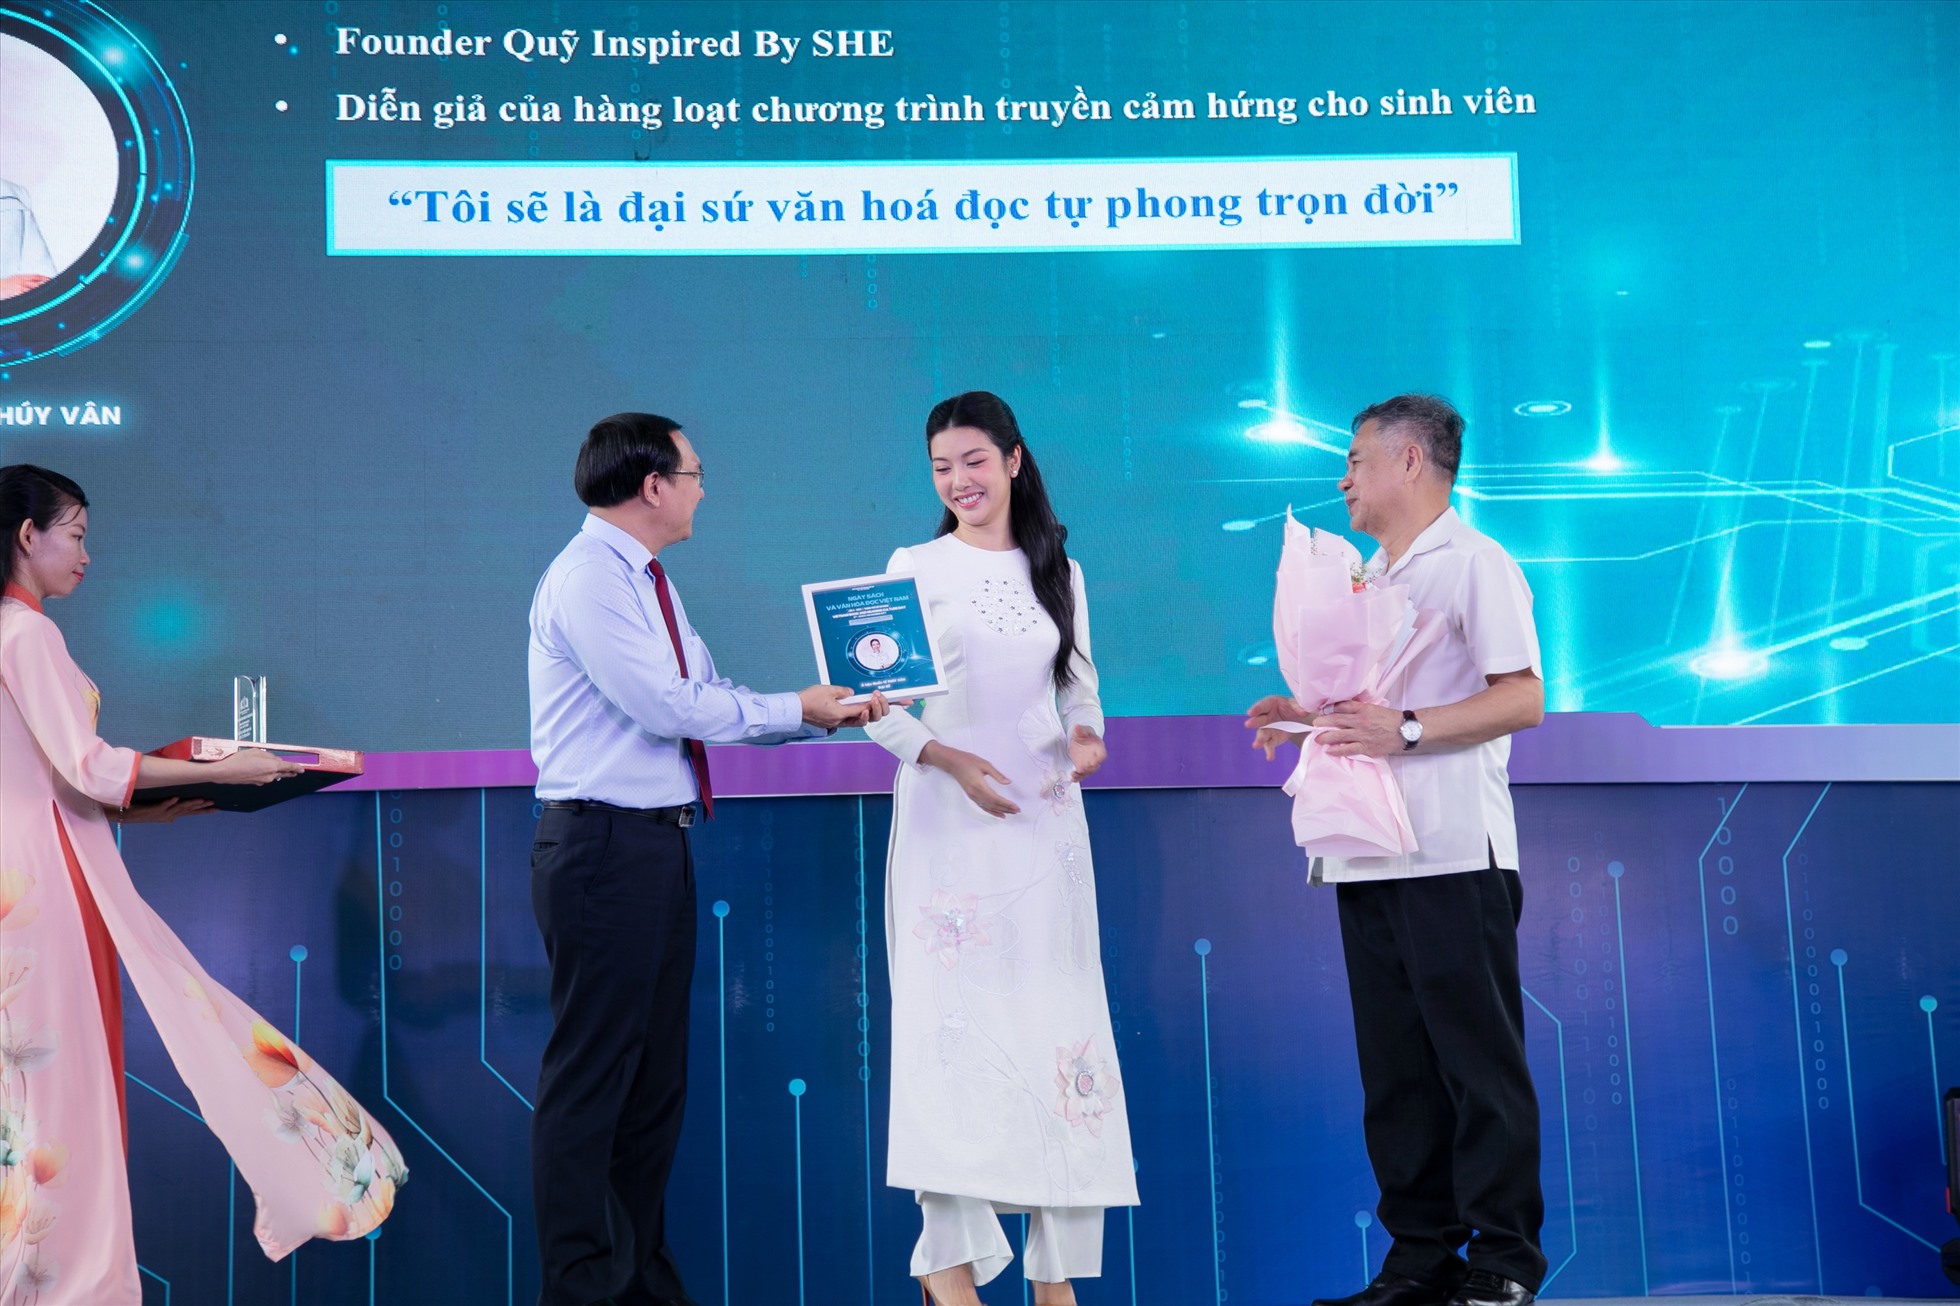 Á hậu Thuý Vân trong ngày Sách và Văn hoá đọc Việt Nam 2023. Ảnh: Nhân vật cung cấp.